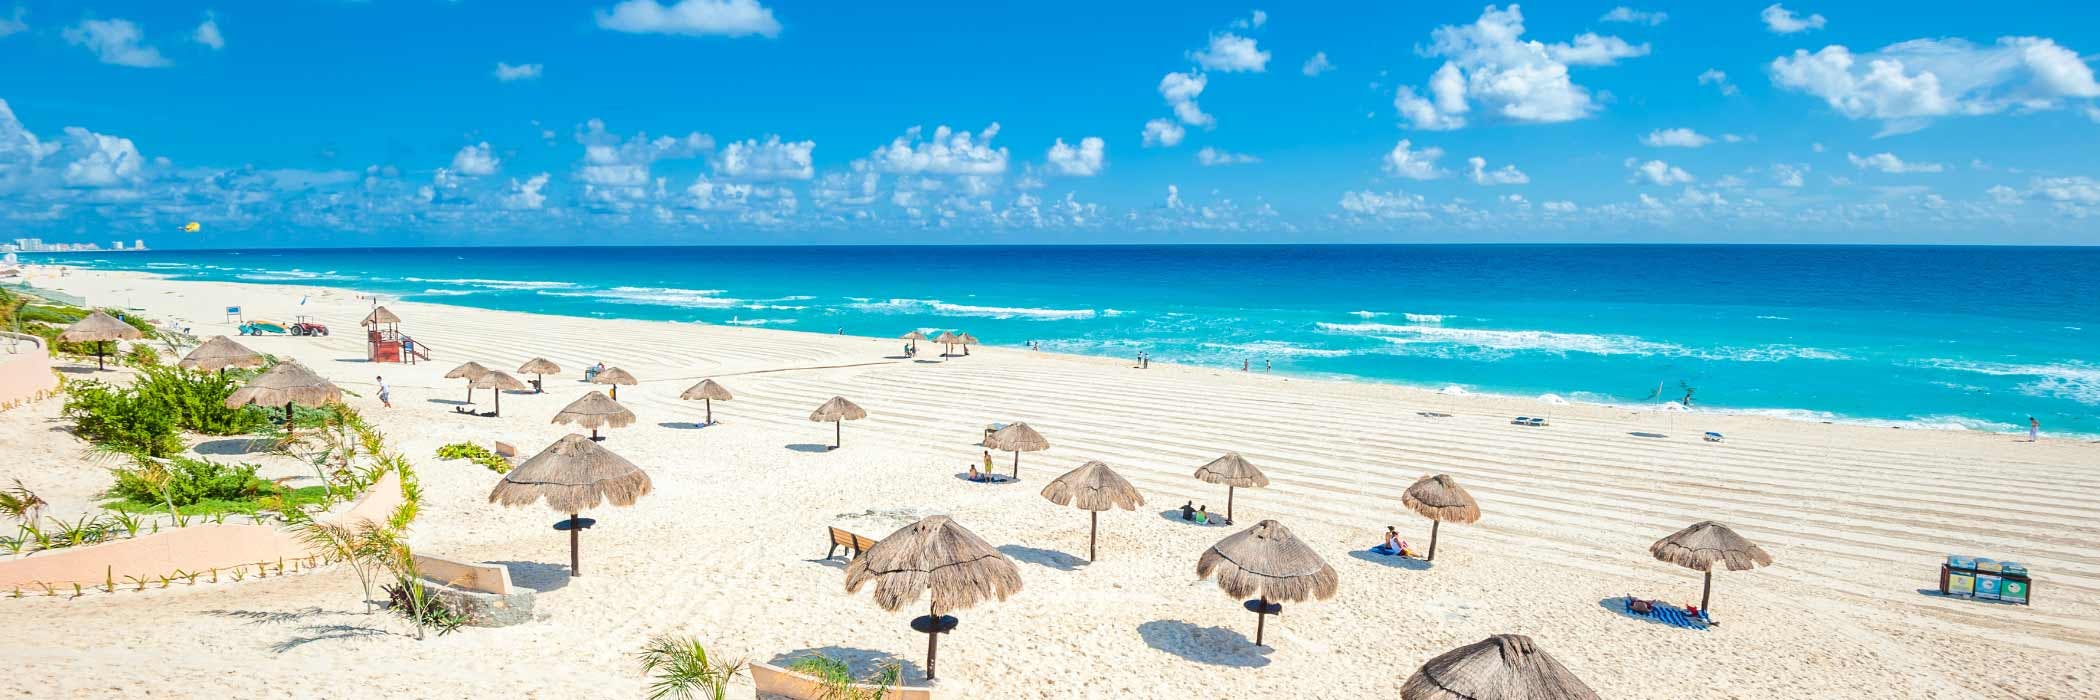 All Inclusive Hotels in Cancun